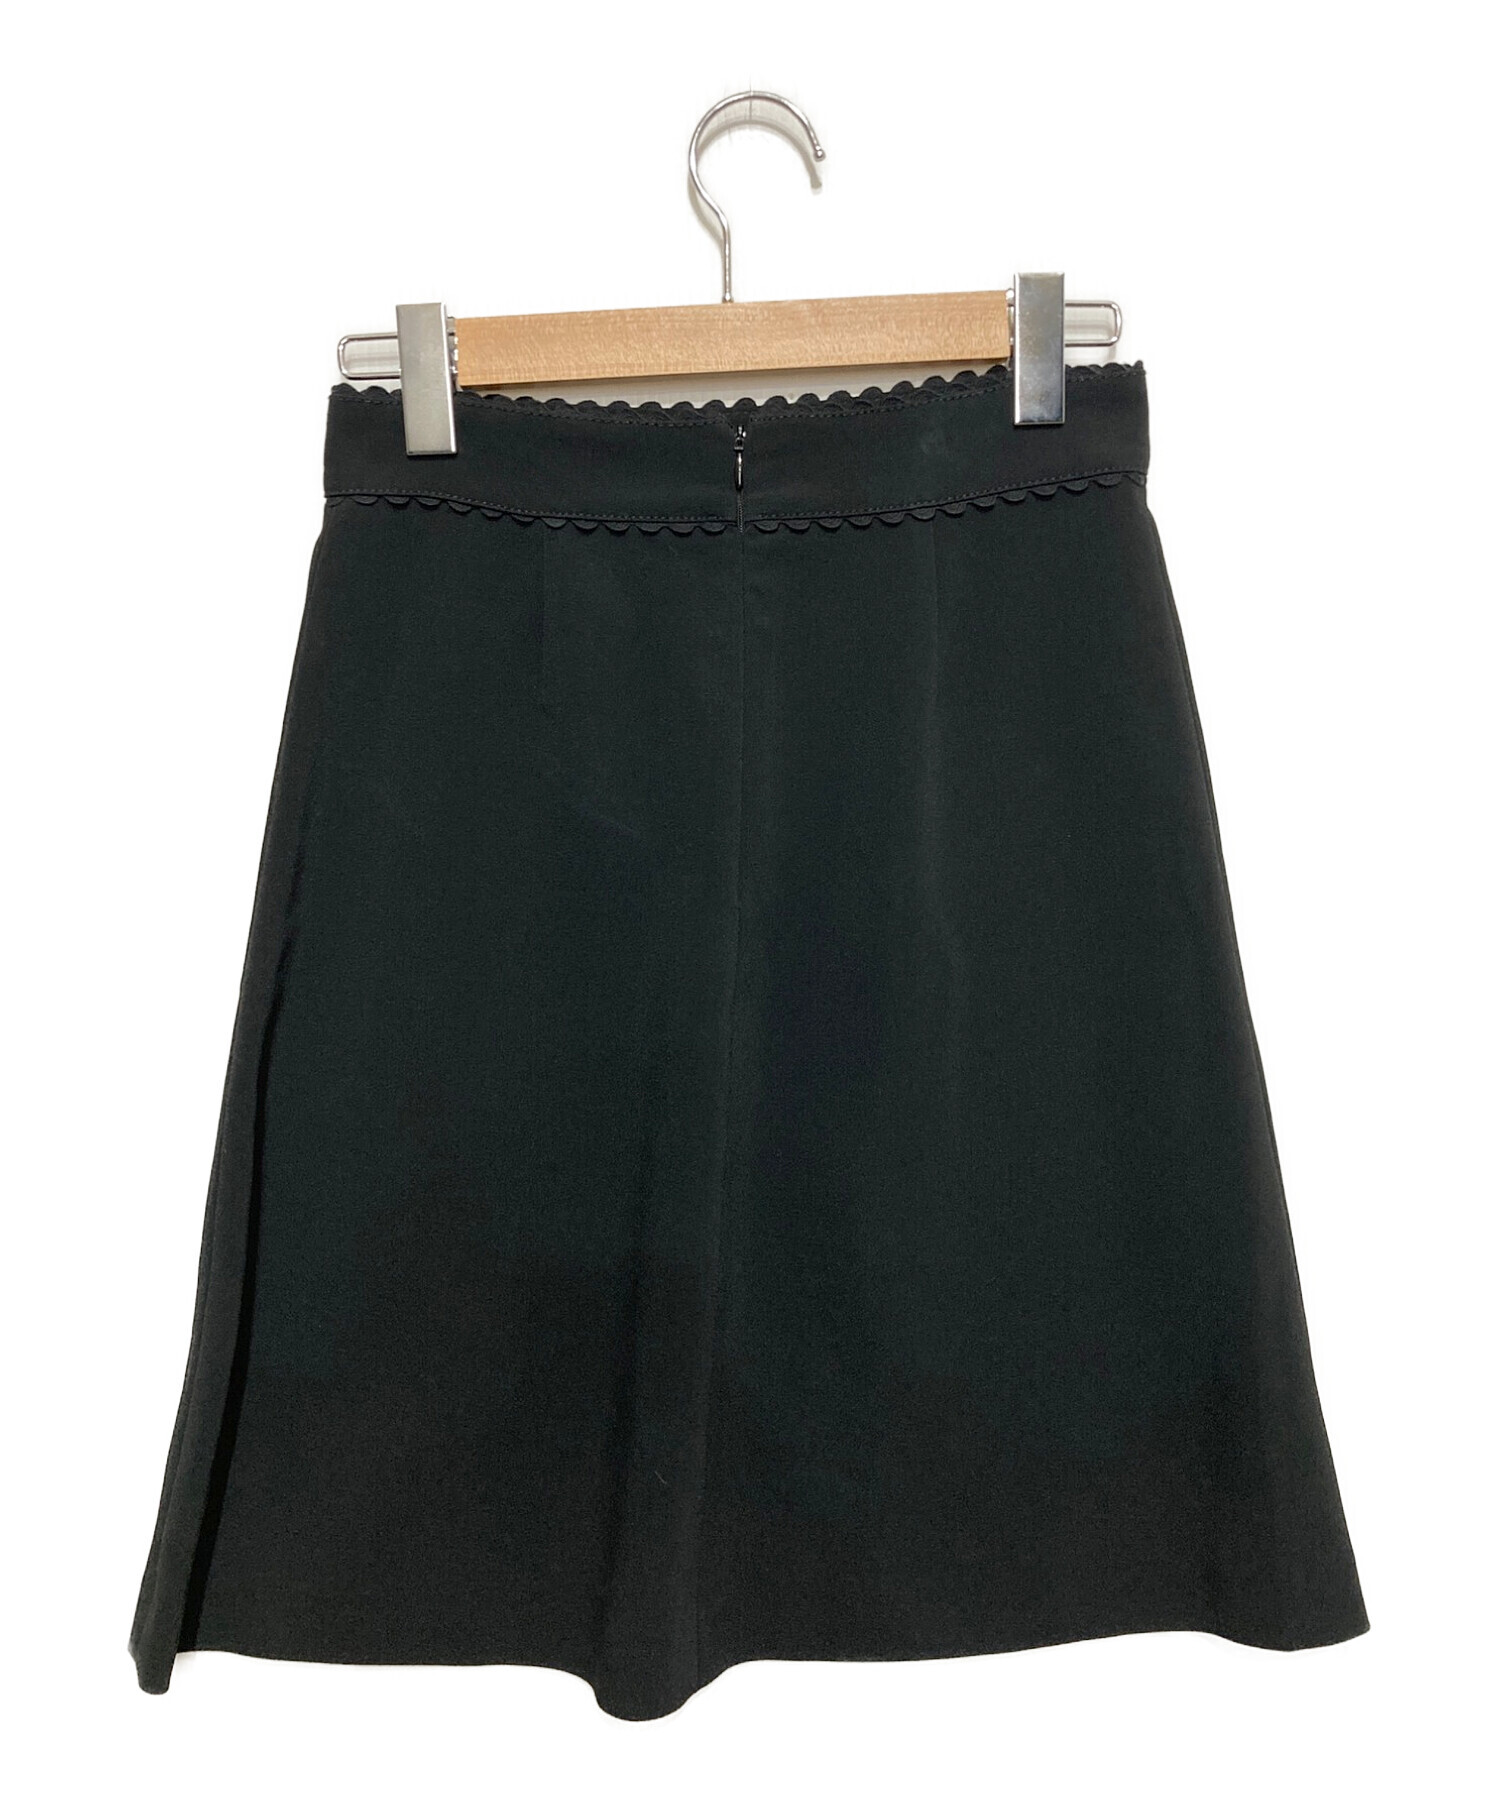 スカート丈74cmhRed valentino 38サイズ　スカート　ブラック